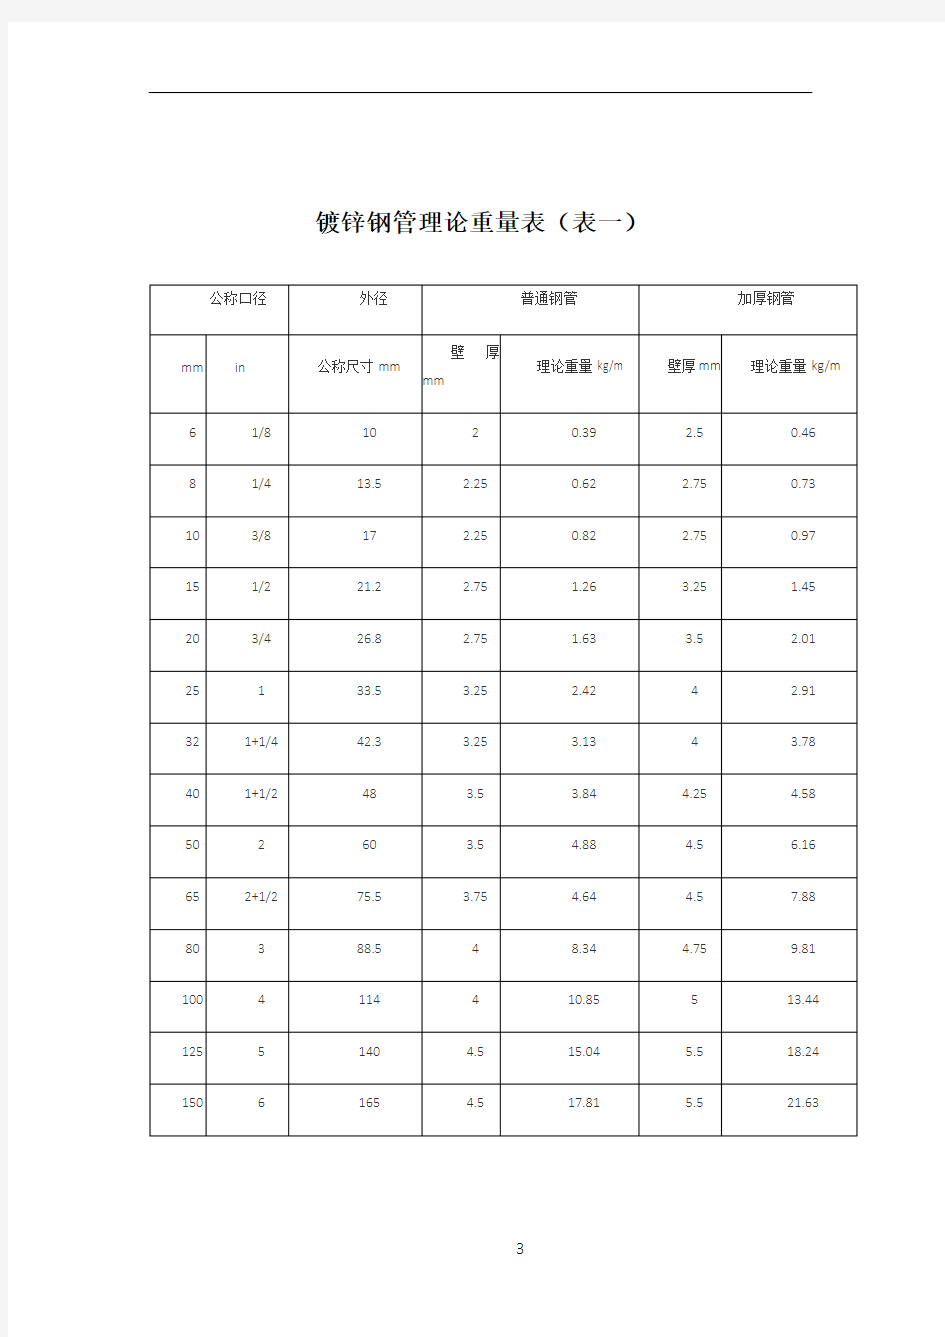 常用镀锌钢管理论重量表(DN15-DN200)